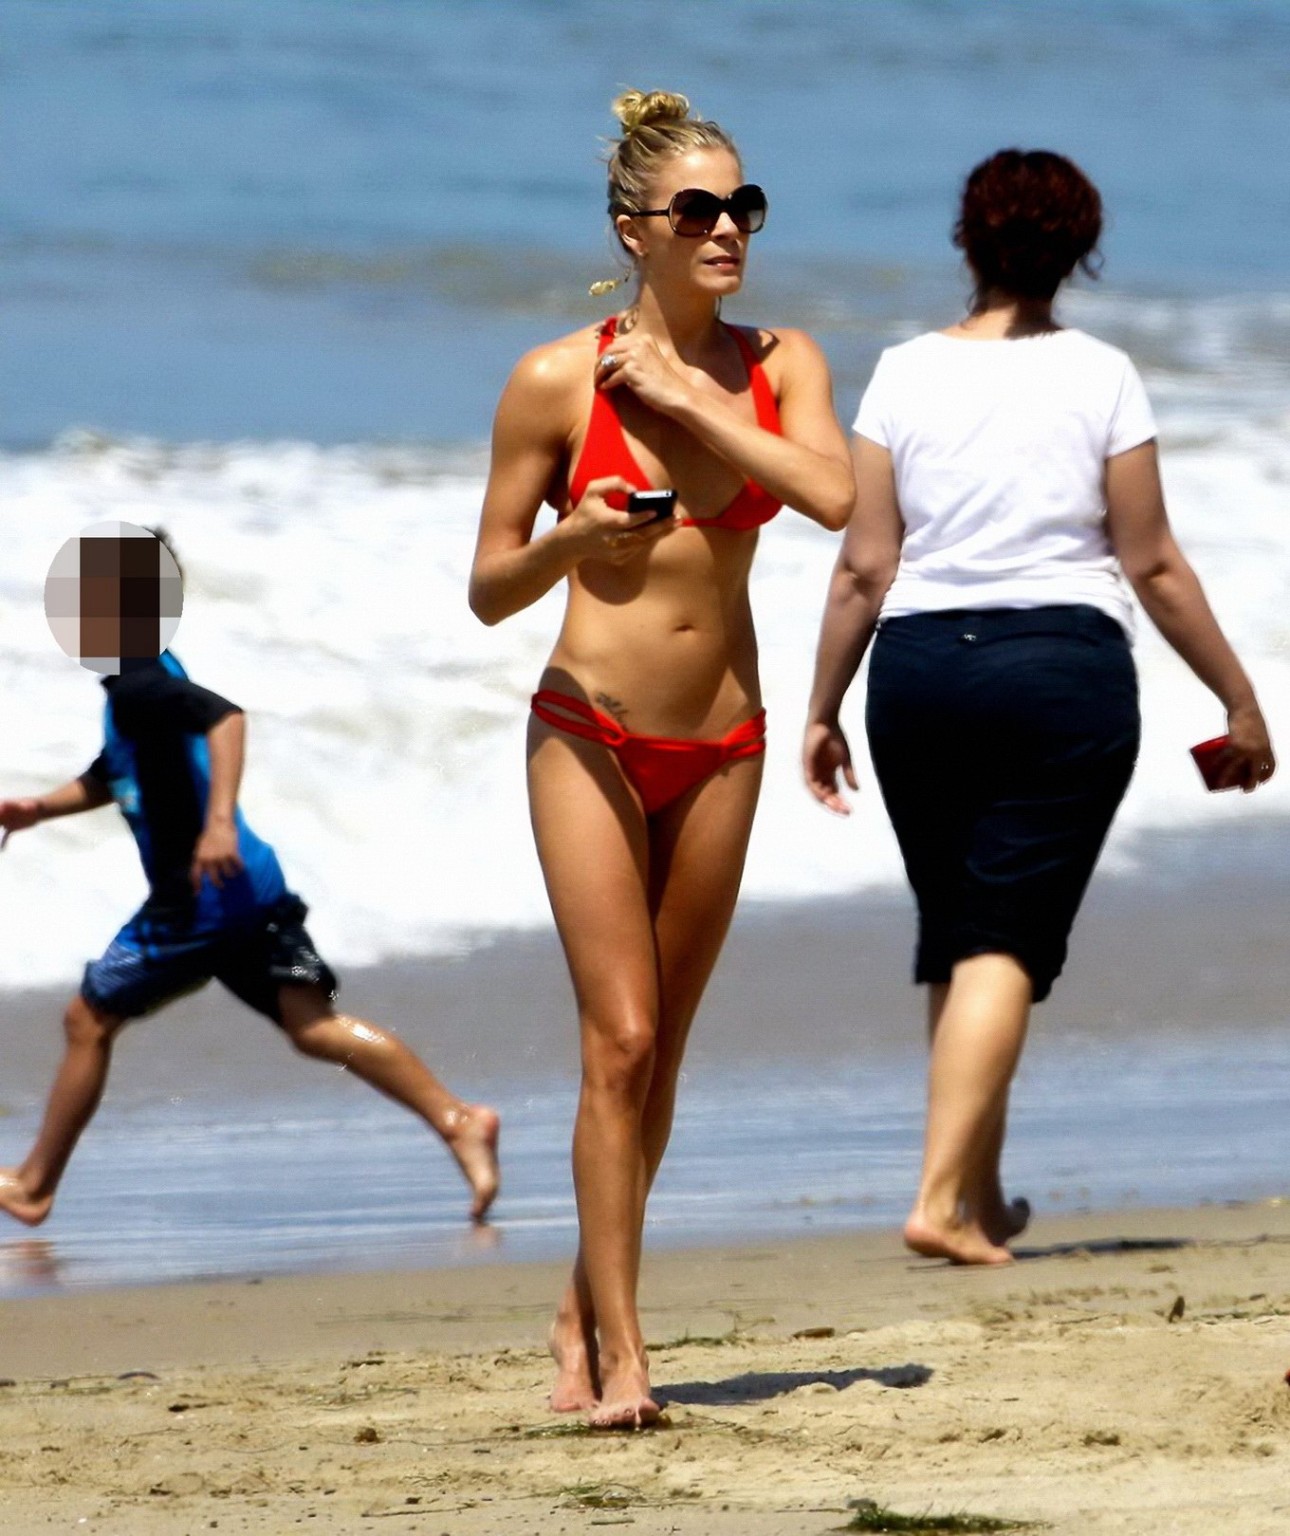 Leann rimes portant un bikini rouge très léger sur la plage de Malibu.
 #75297517